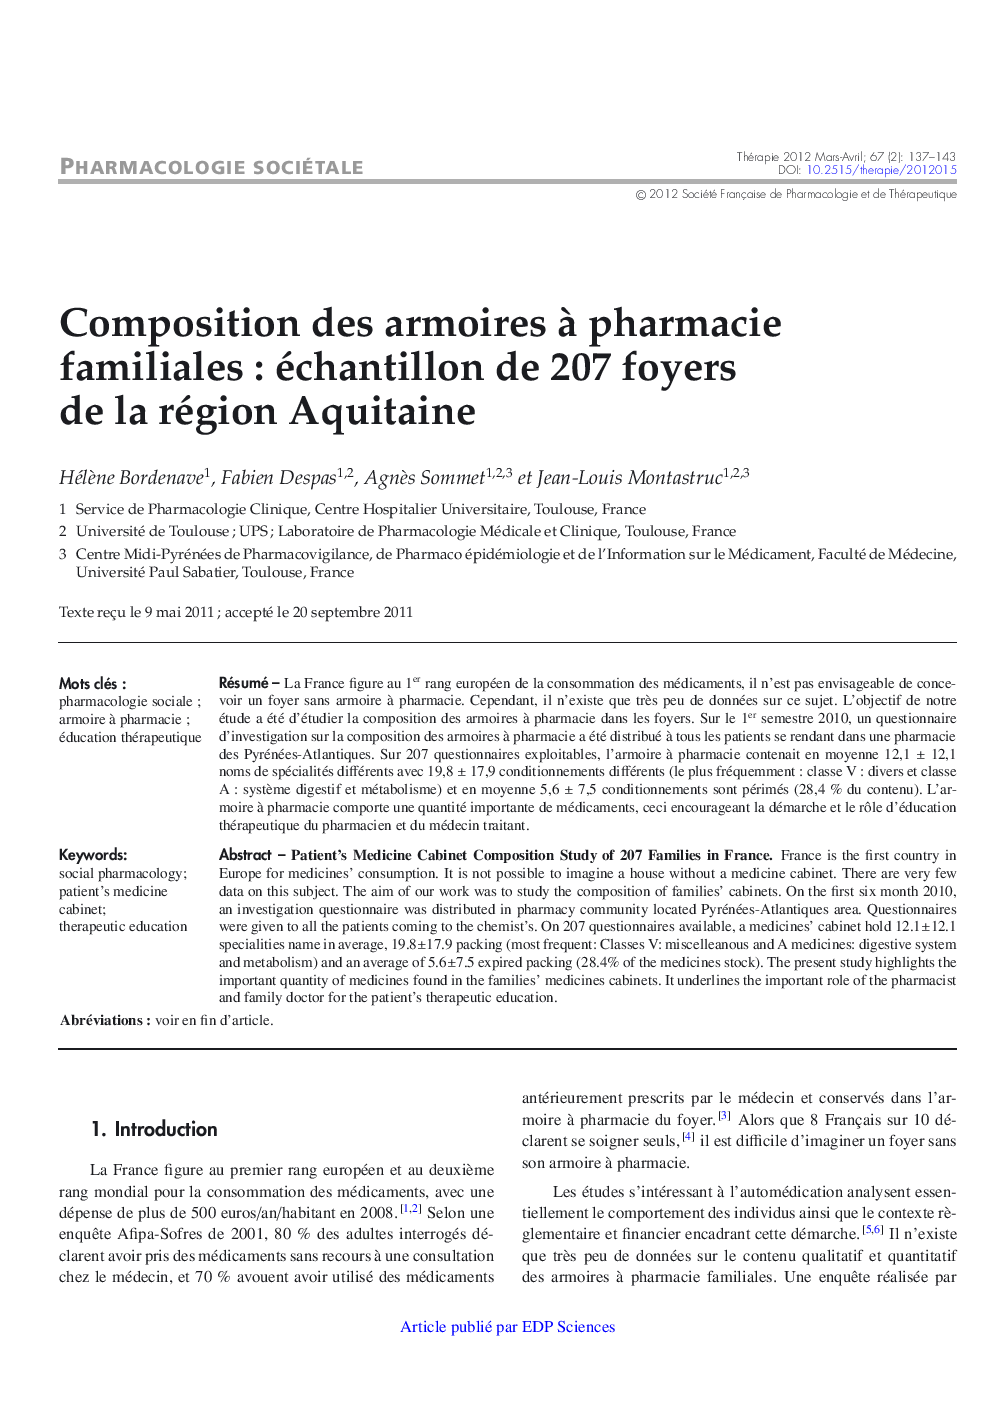 Composition des armoires Ã  pharmacie familiales : échantillon de 207 foyers de la région Aquitaine